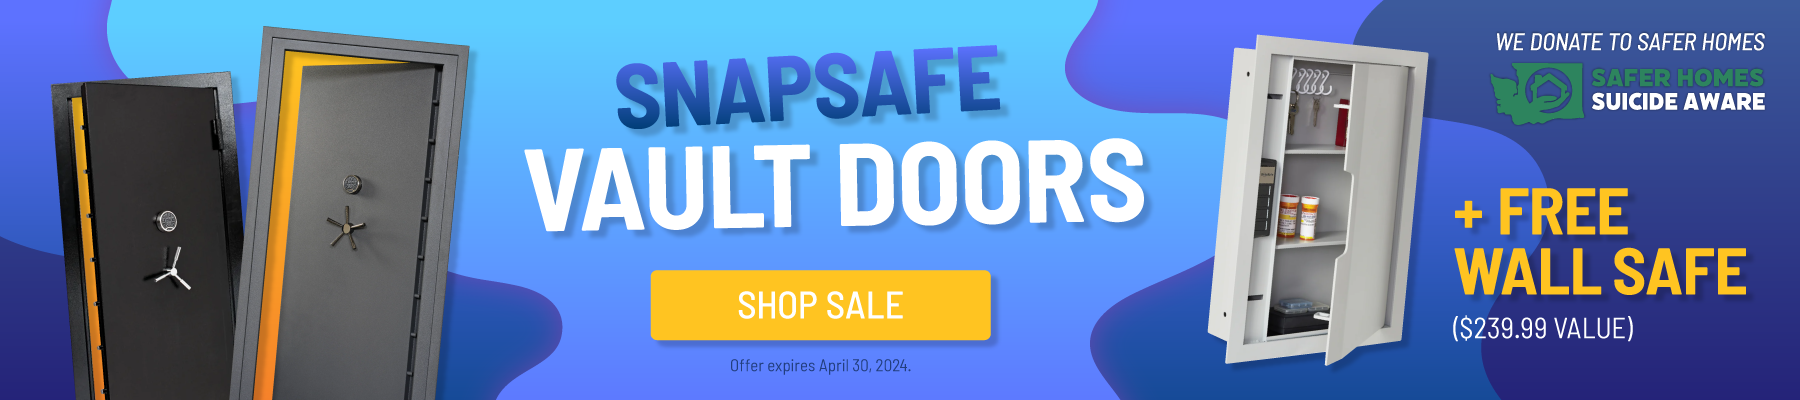 SnapSafe Vault Doors - Get a FREE Wall Safe